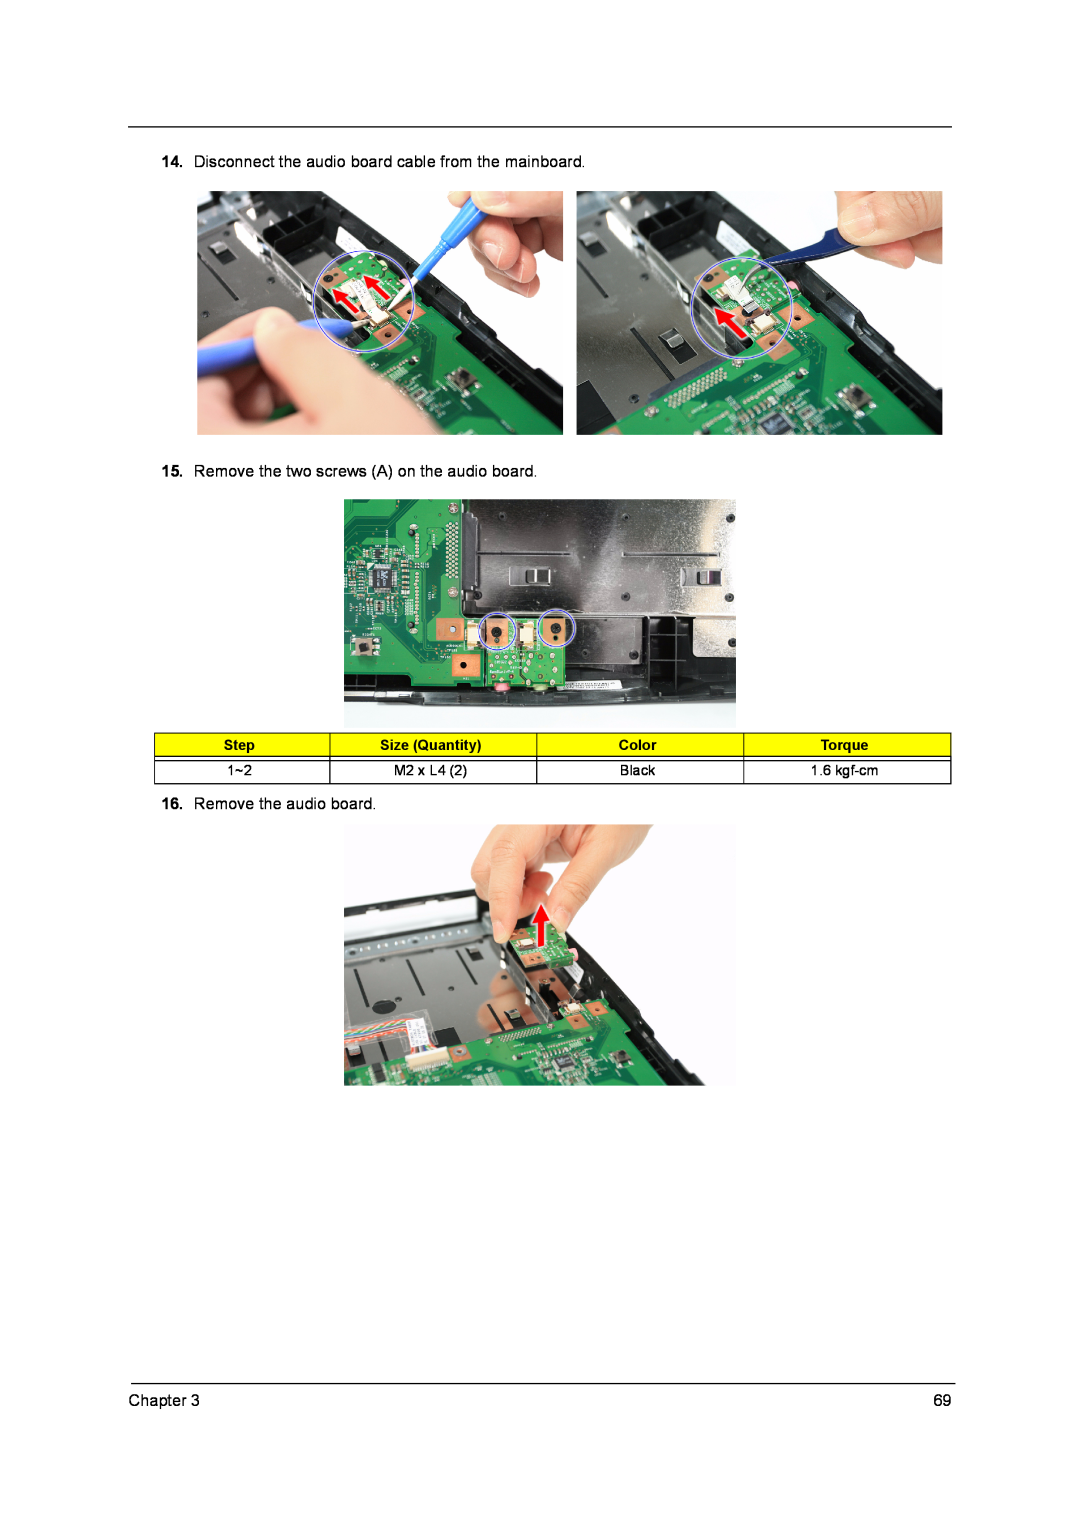 Acer 4315 manual Step, Size Quantity, Color, Torque, Black, M2 x L4, kgf-cm 